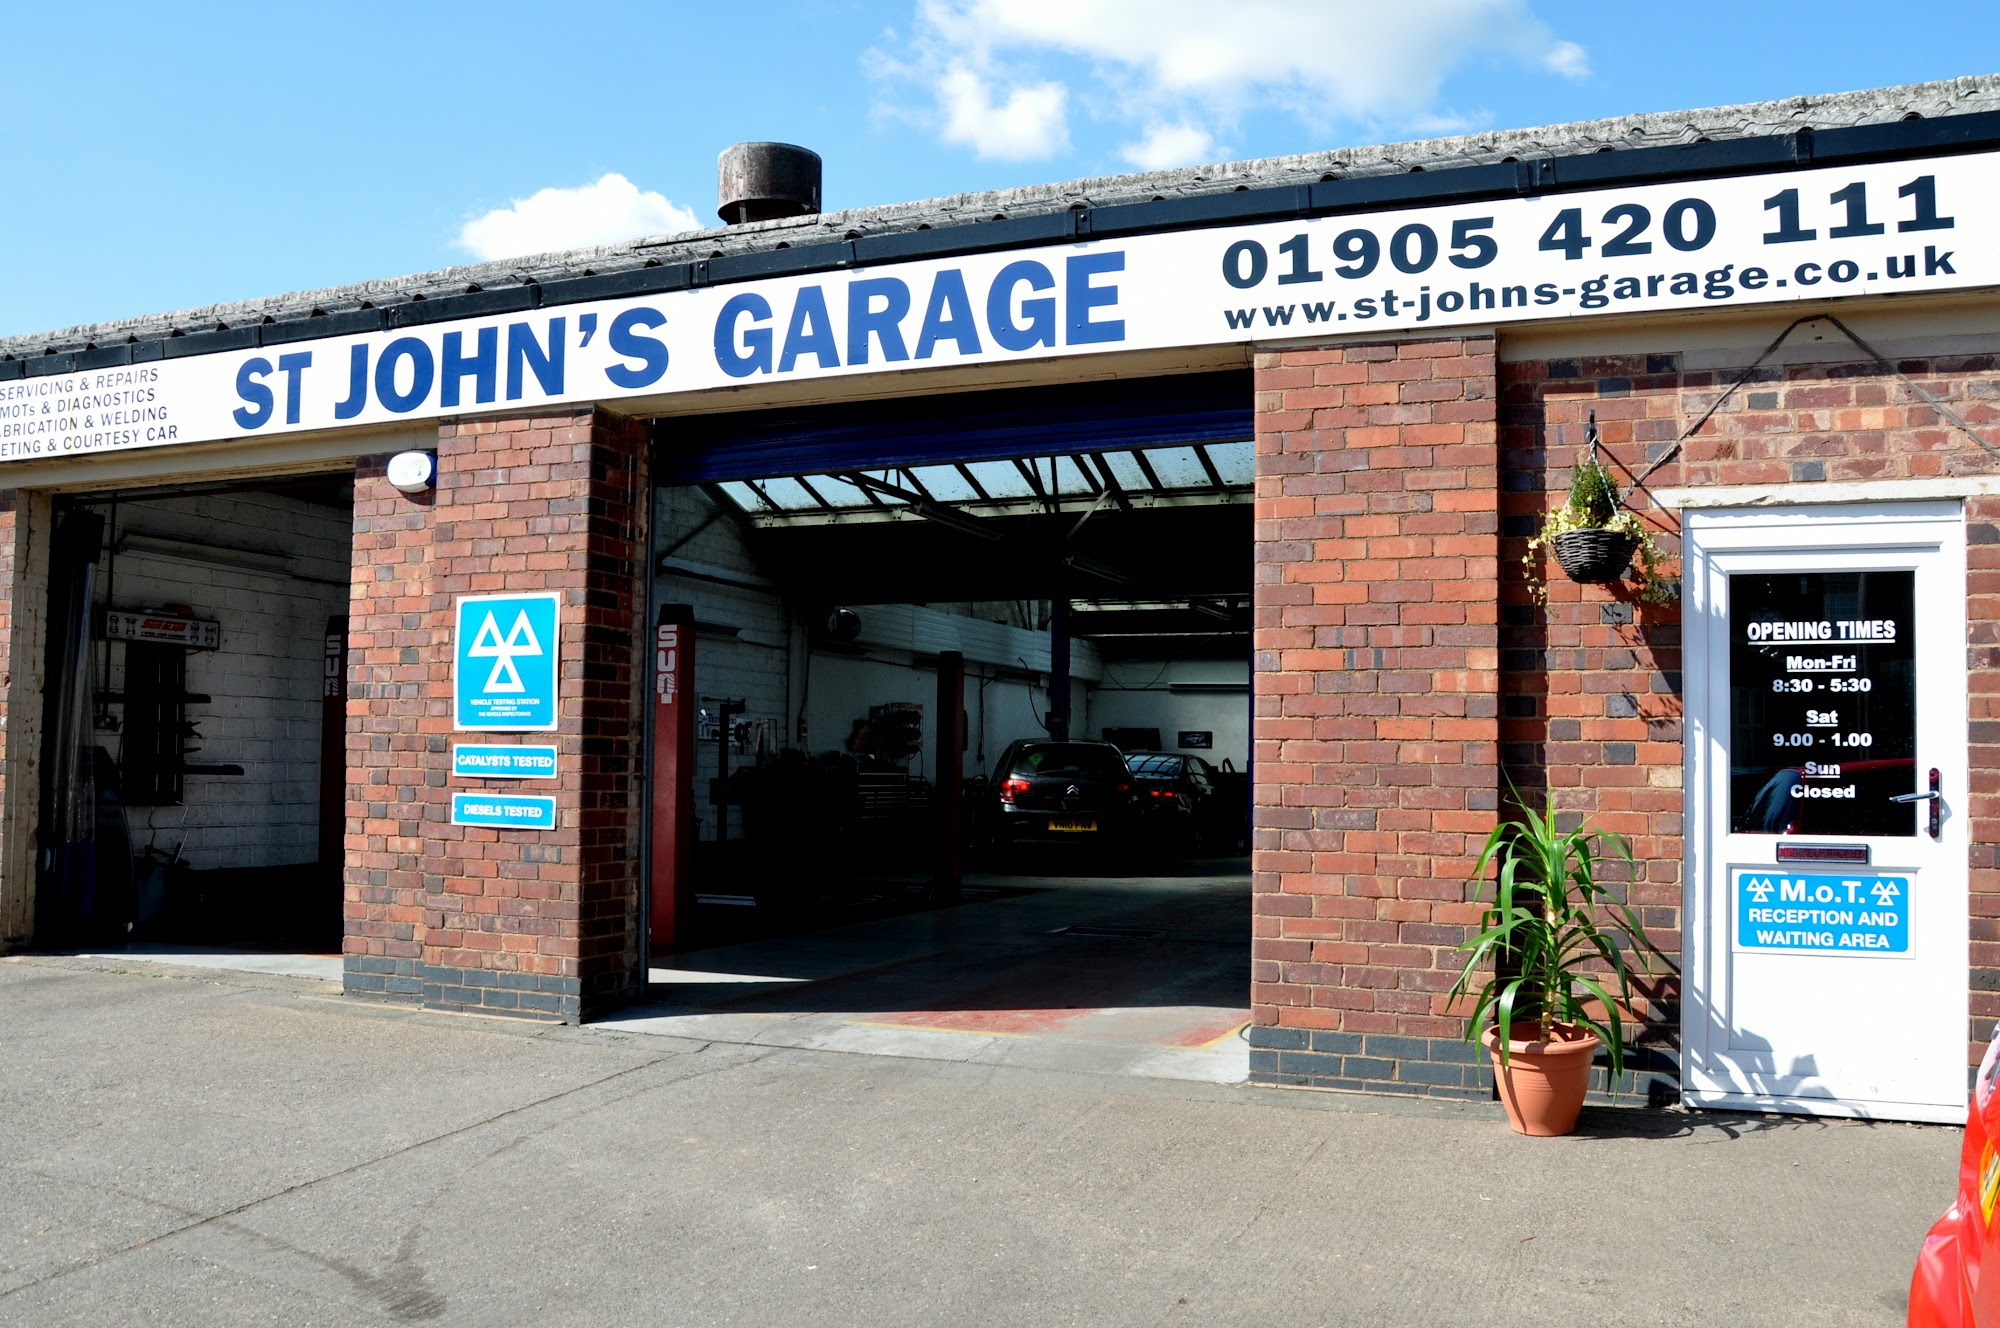 St John's Garage